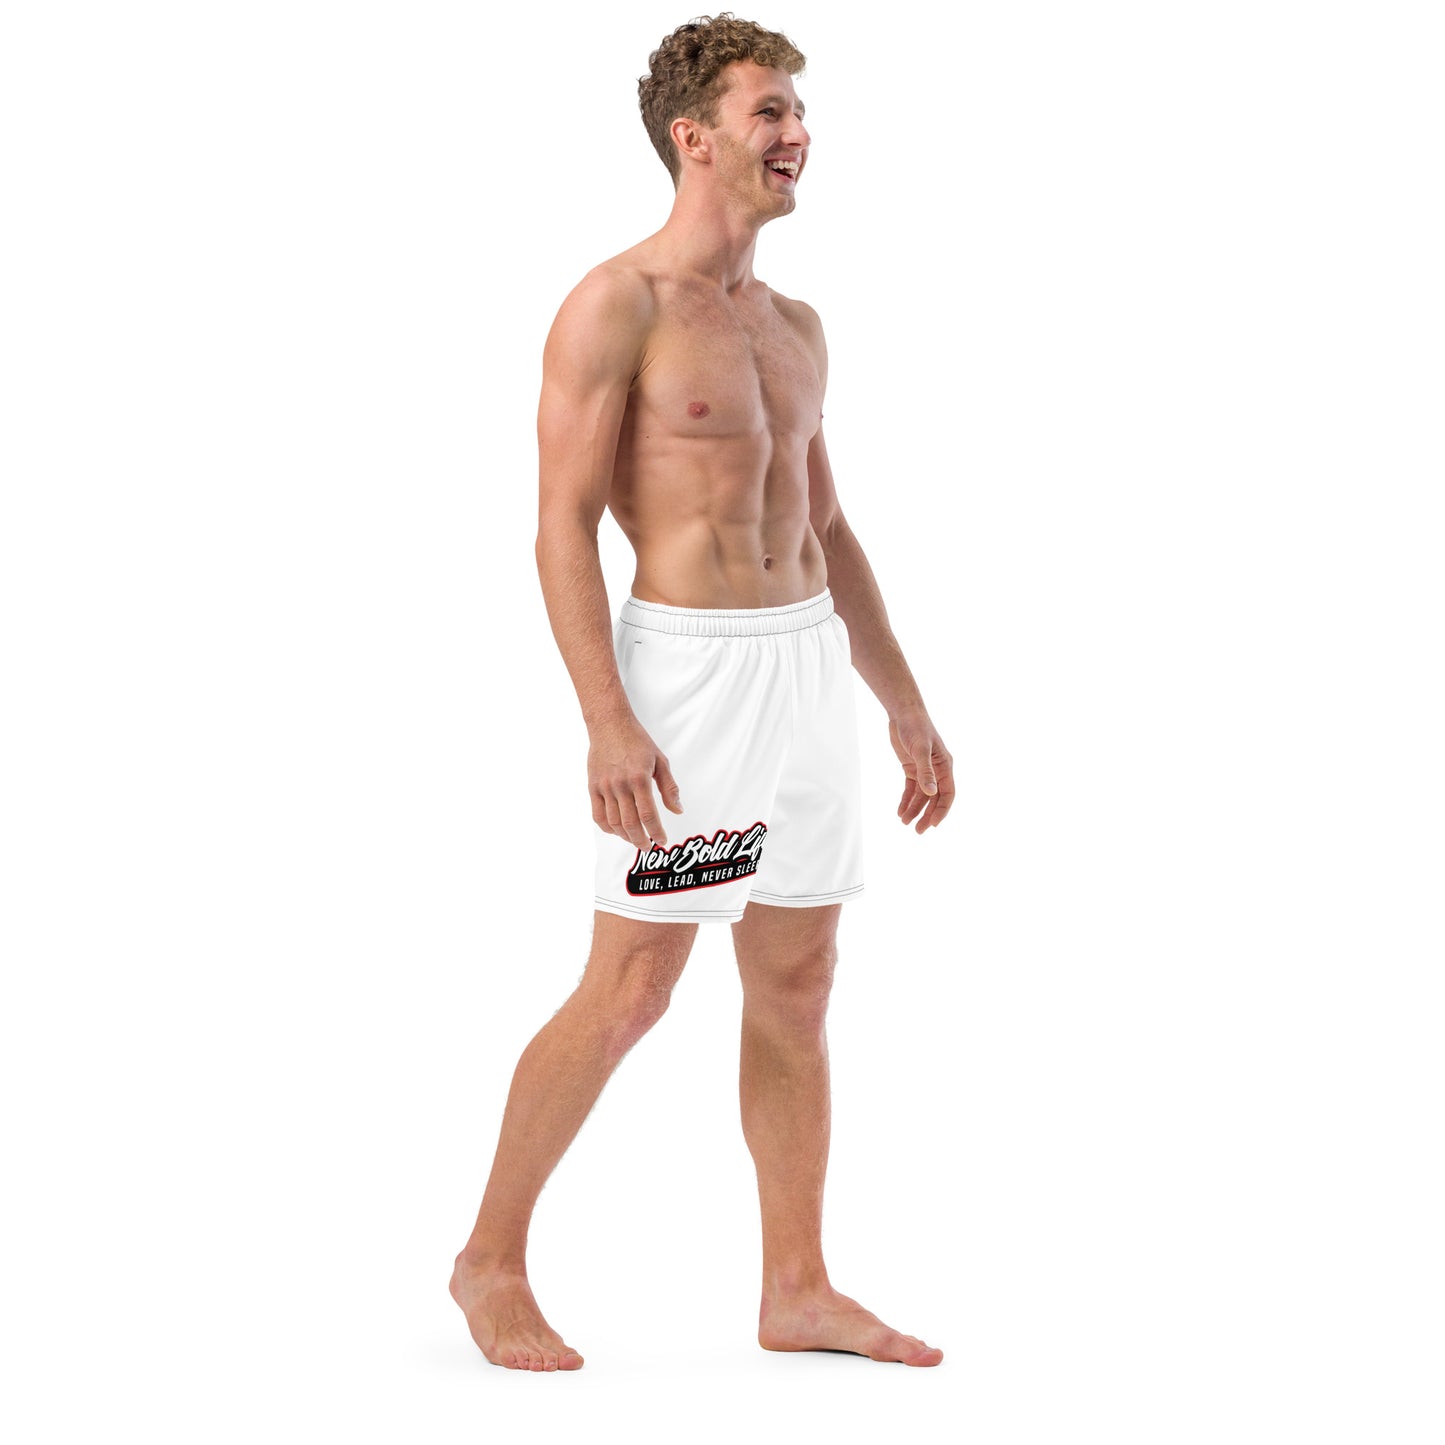 NBL Swim Trunks - Men's Clothing